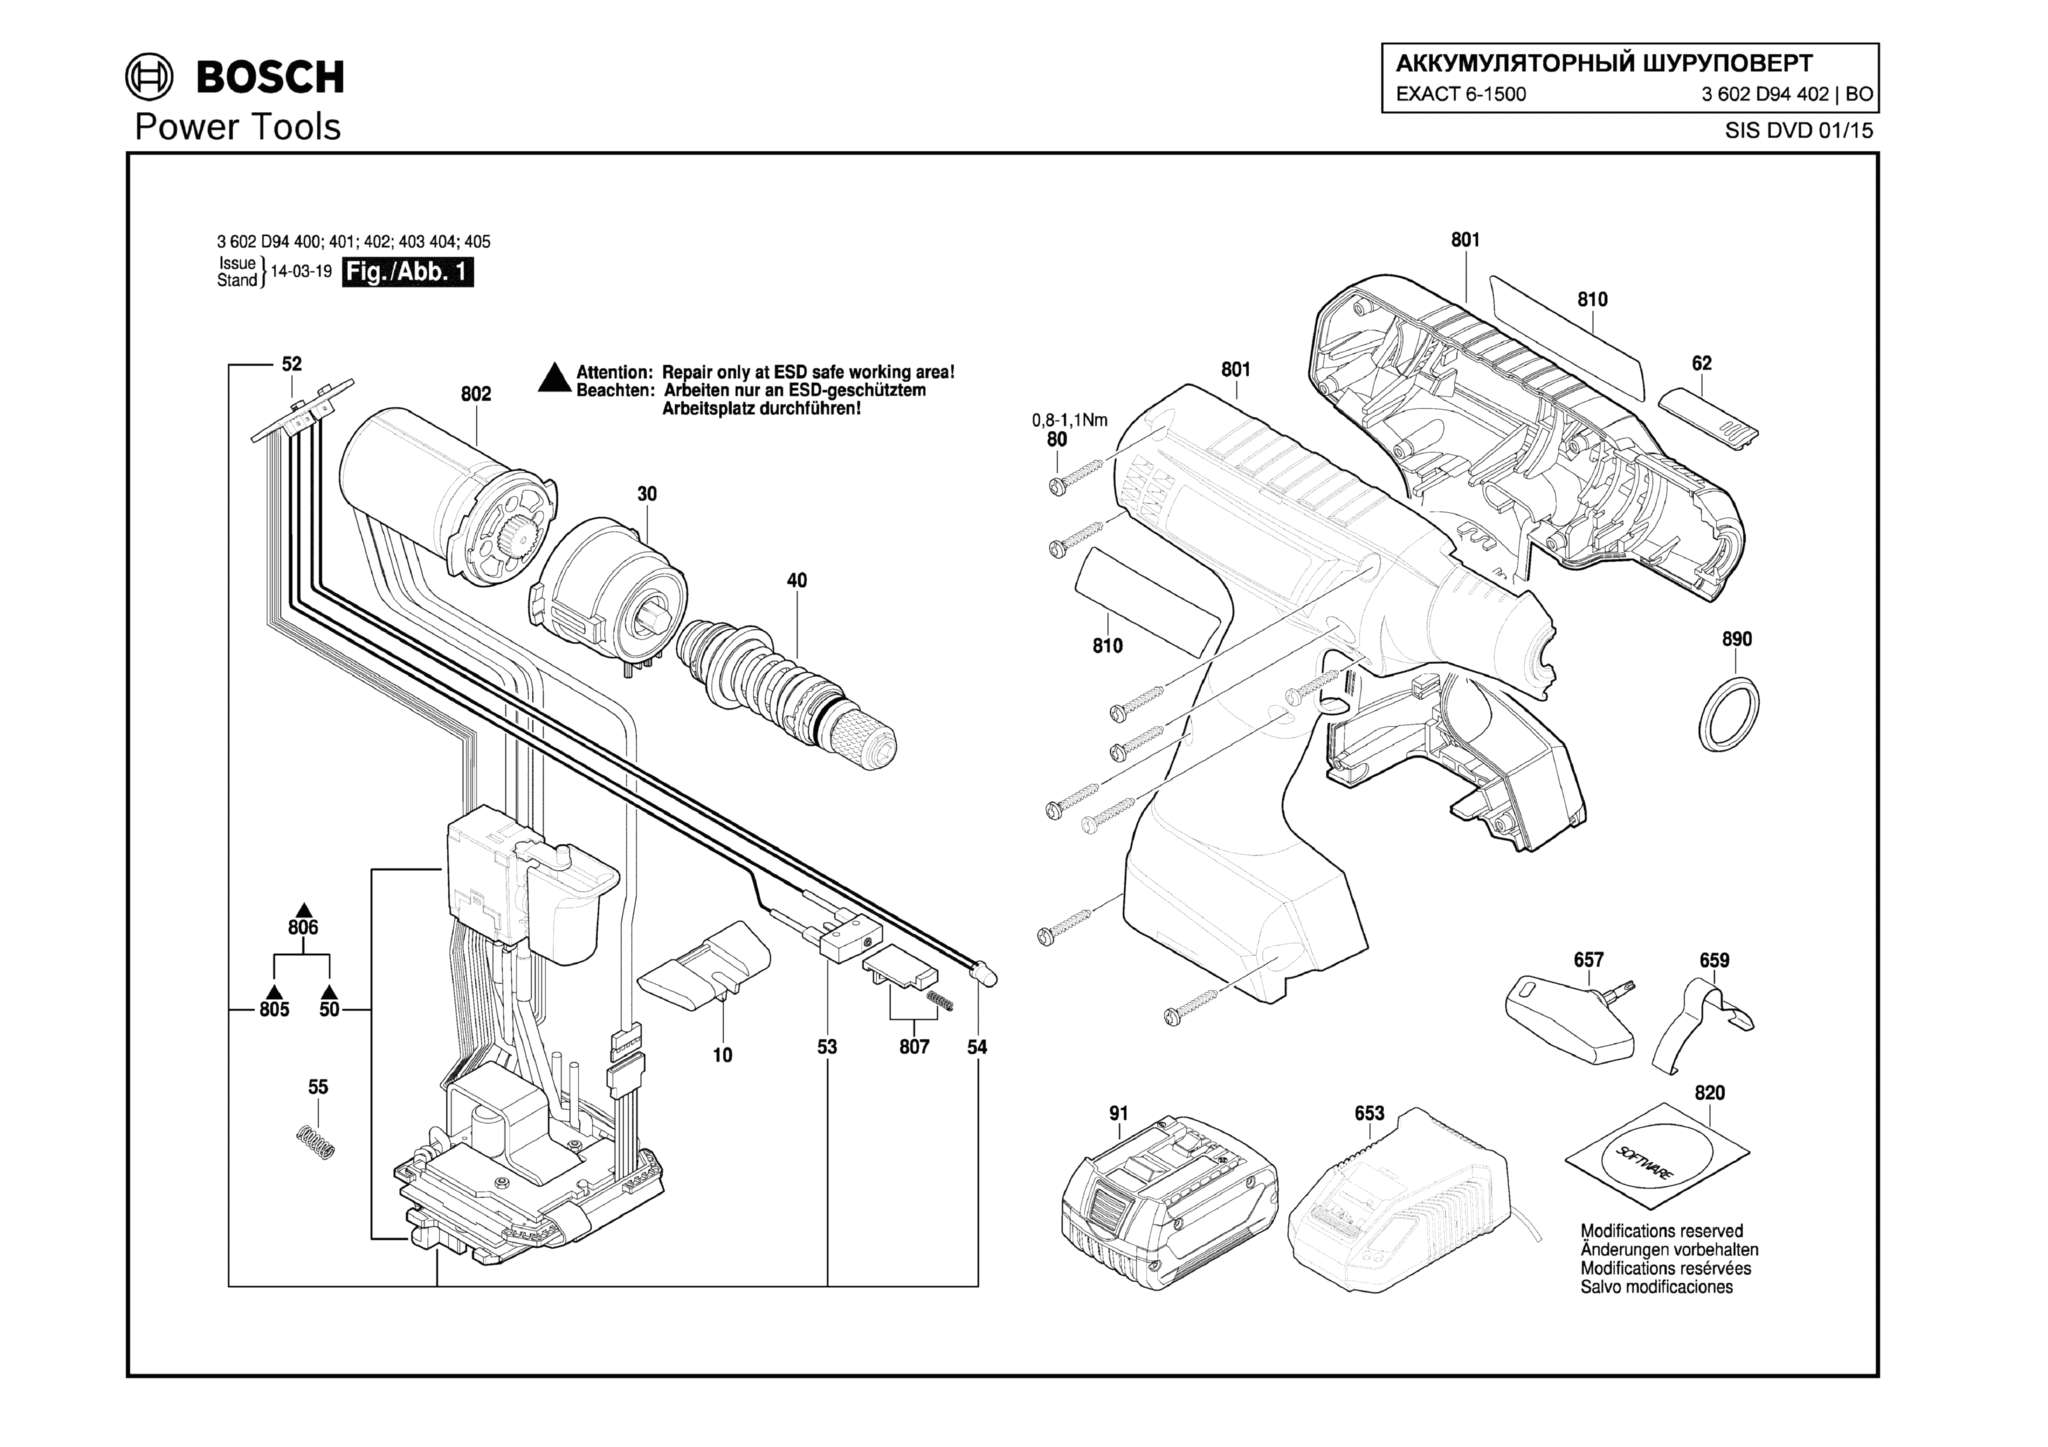 Запчасти, схема и деталировка Bosch EXACT 6-1500 (ТИП 3602D94402)